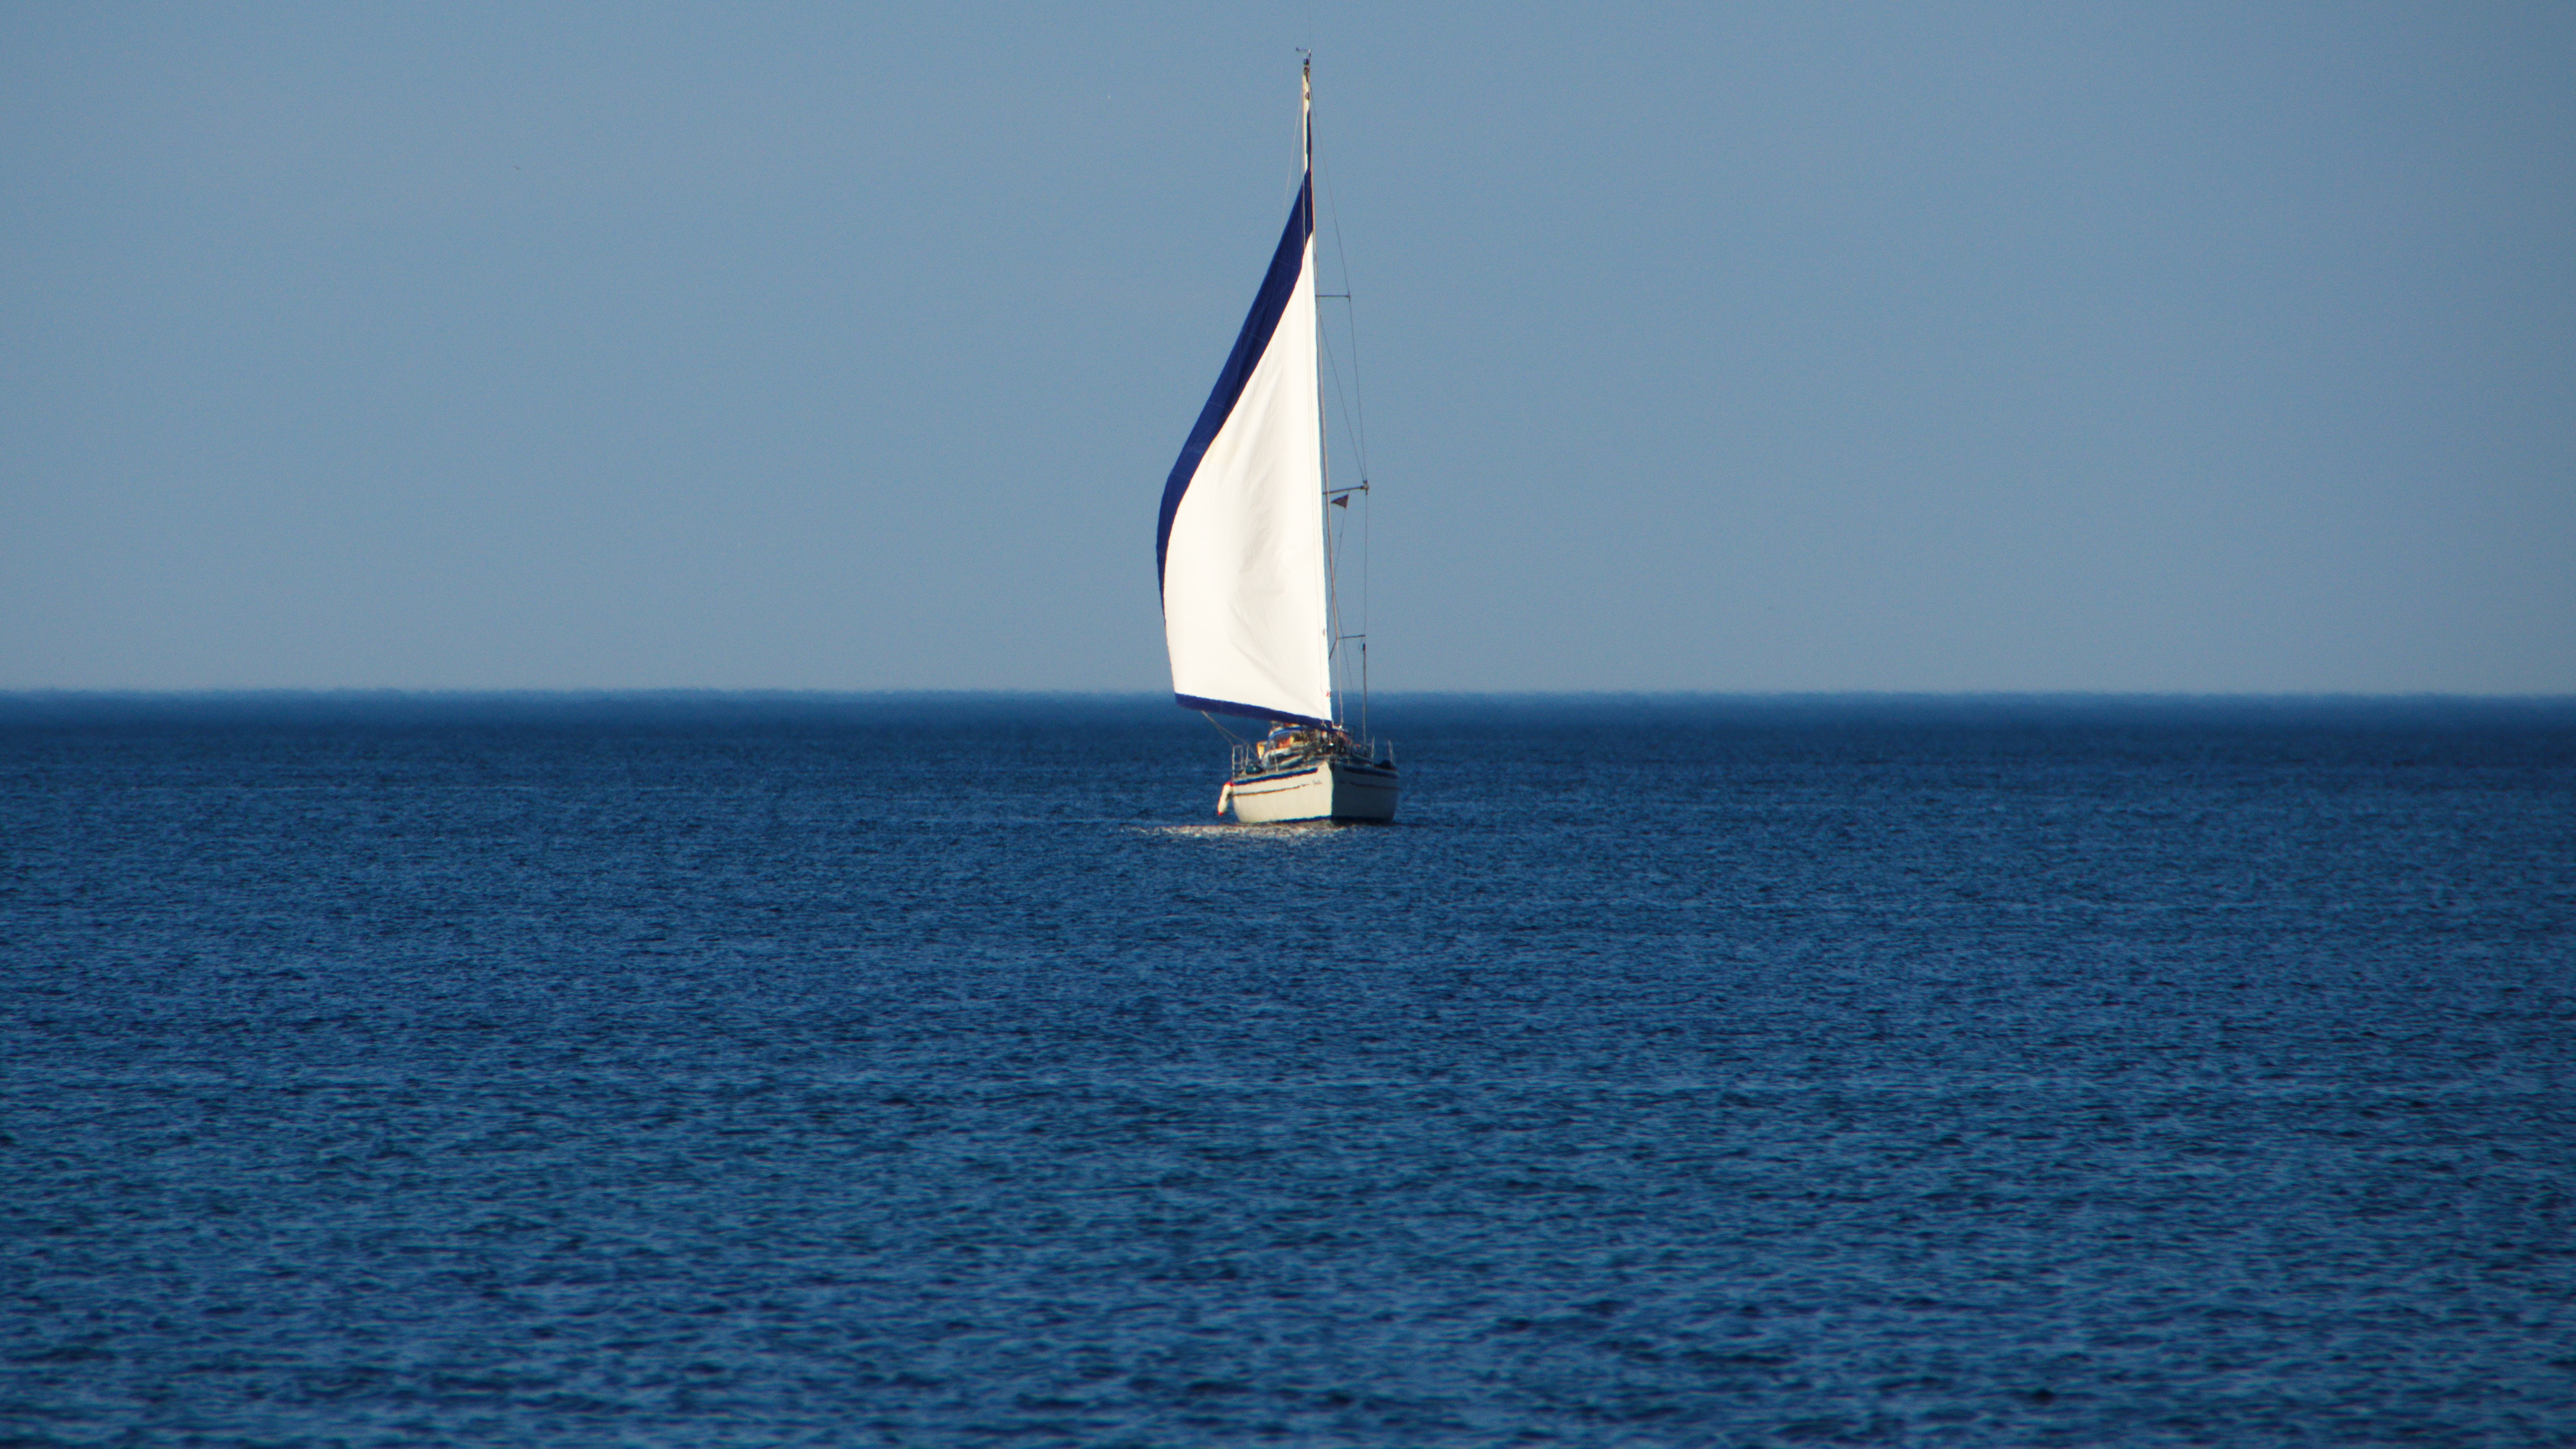 Segelschiff auf dem Meer – Randnotizen.org